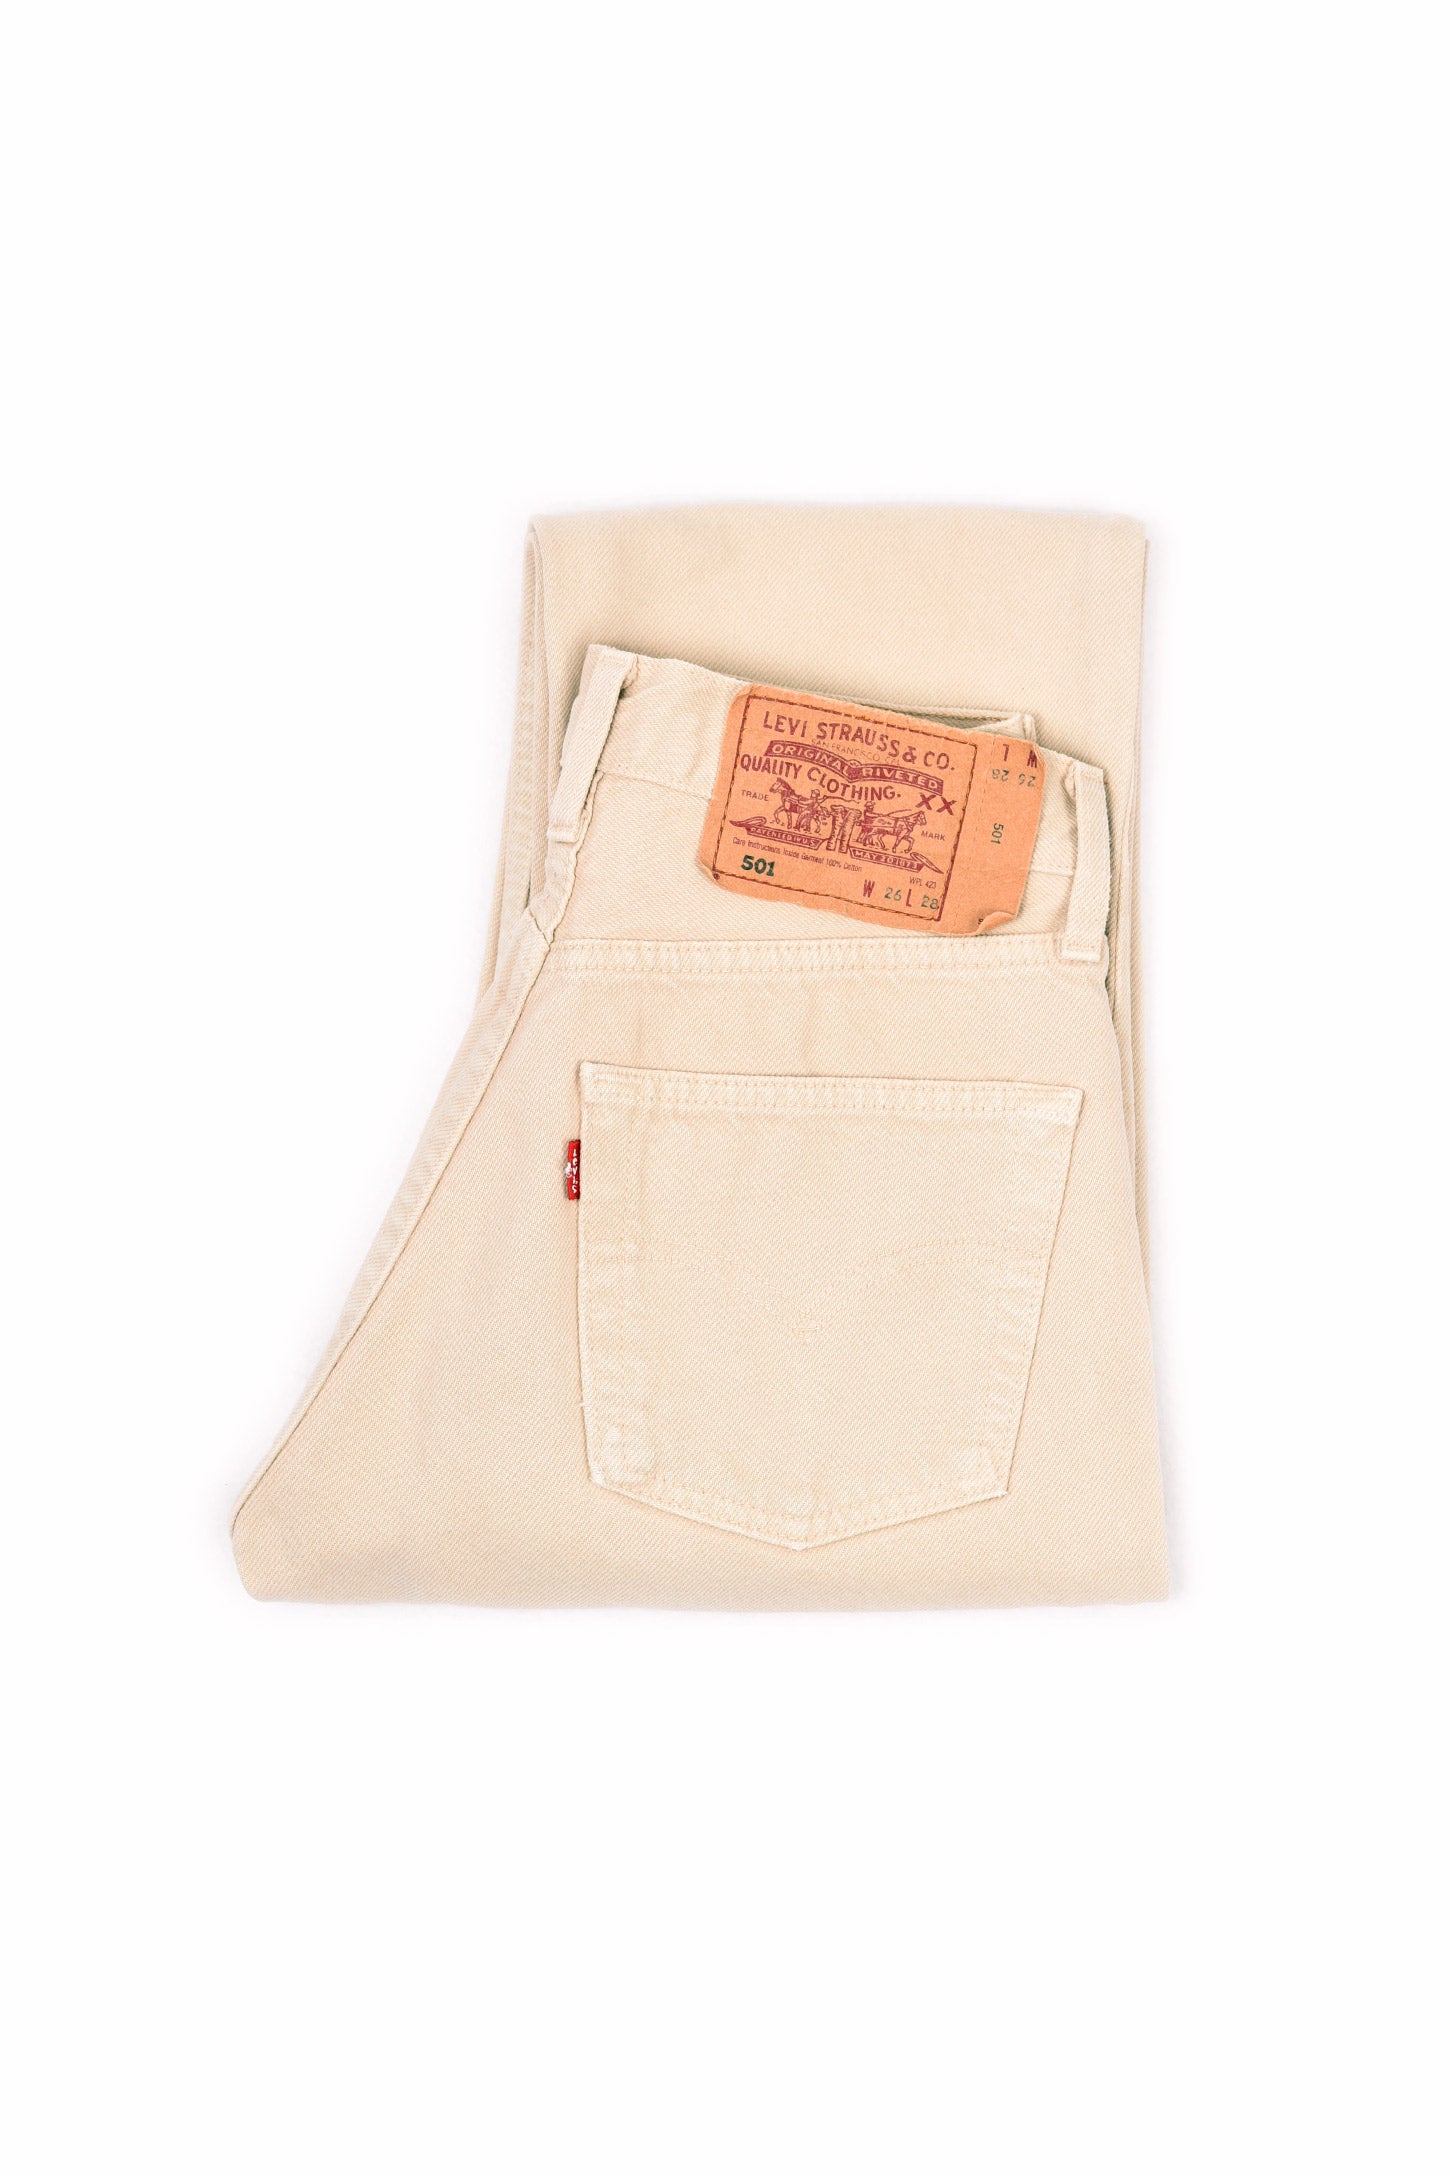 Levi's 501 Original Fit Jeans Beige 